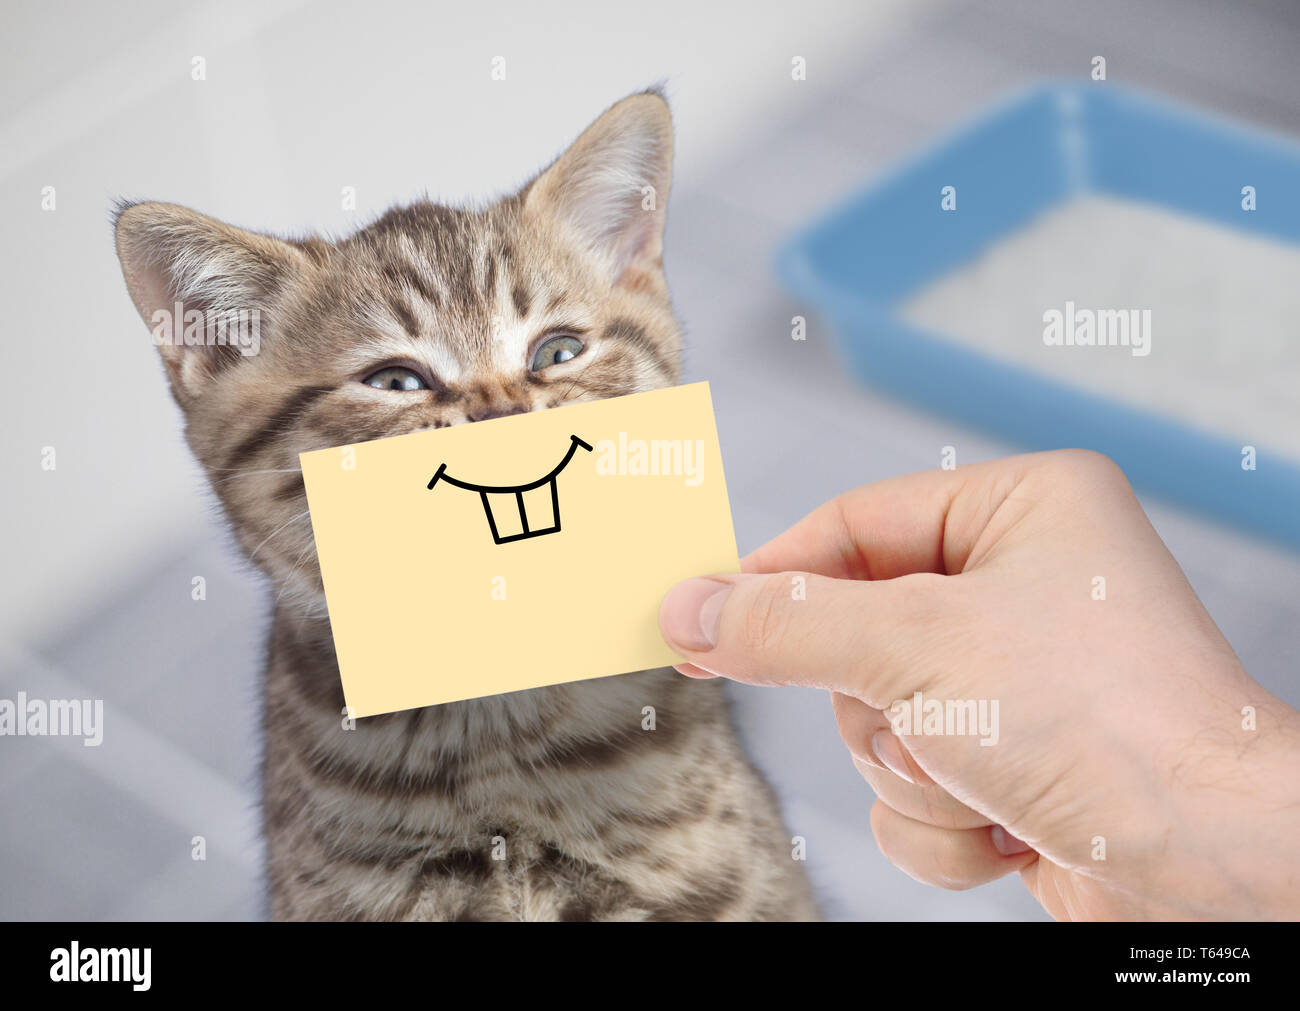 Lustige Katze mit Lächeln auf Karton sitzt in der Nähe der Wurfkiste  Stockfotografie - Alamy